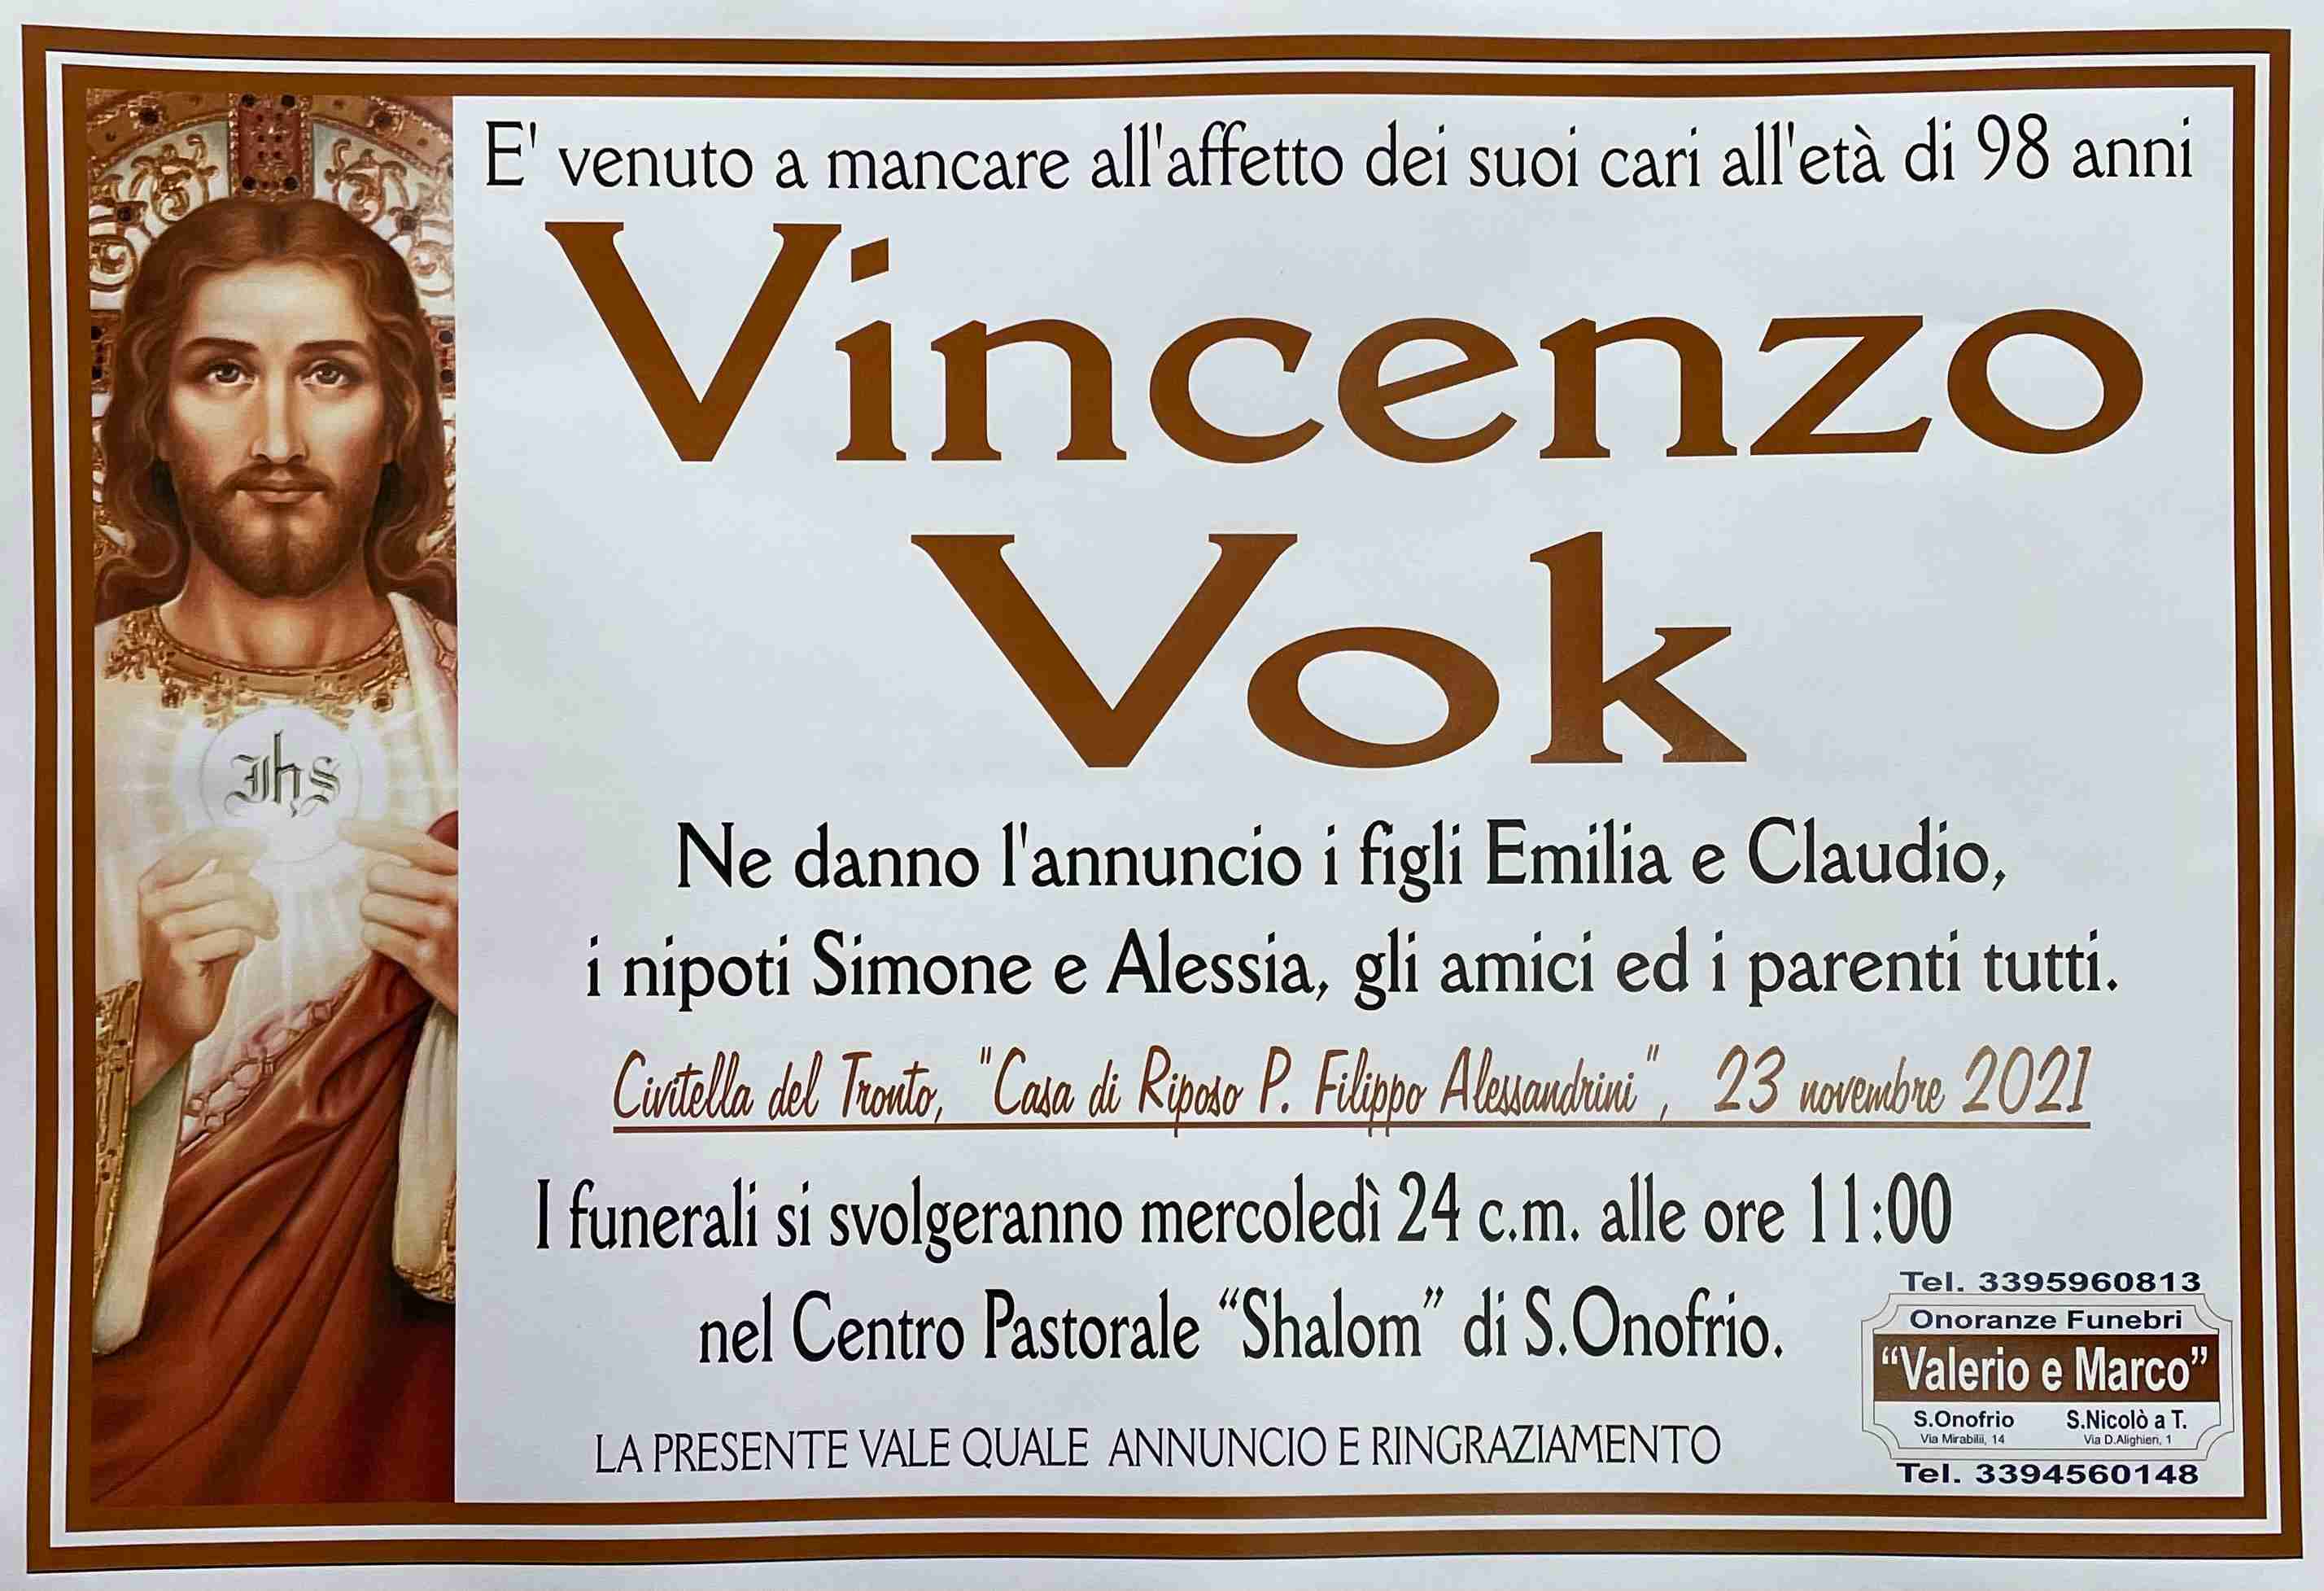 Vincenzo Vok